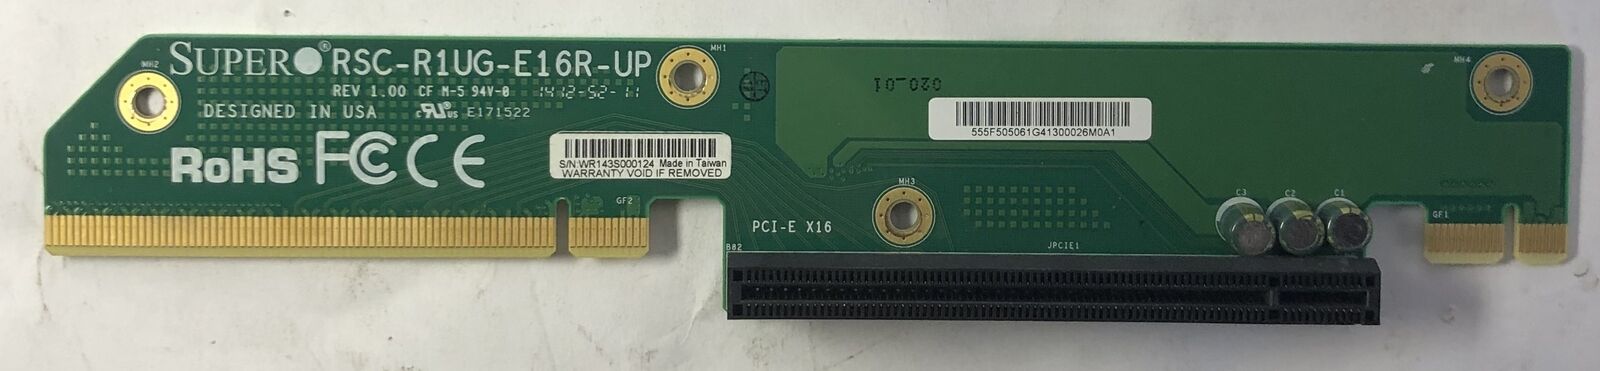 SuperMicro Server RSC-R1UG-E16R-UP Right Riser Card